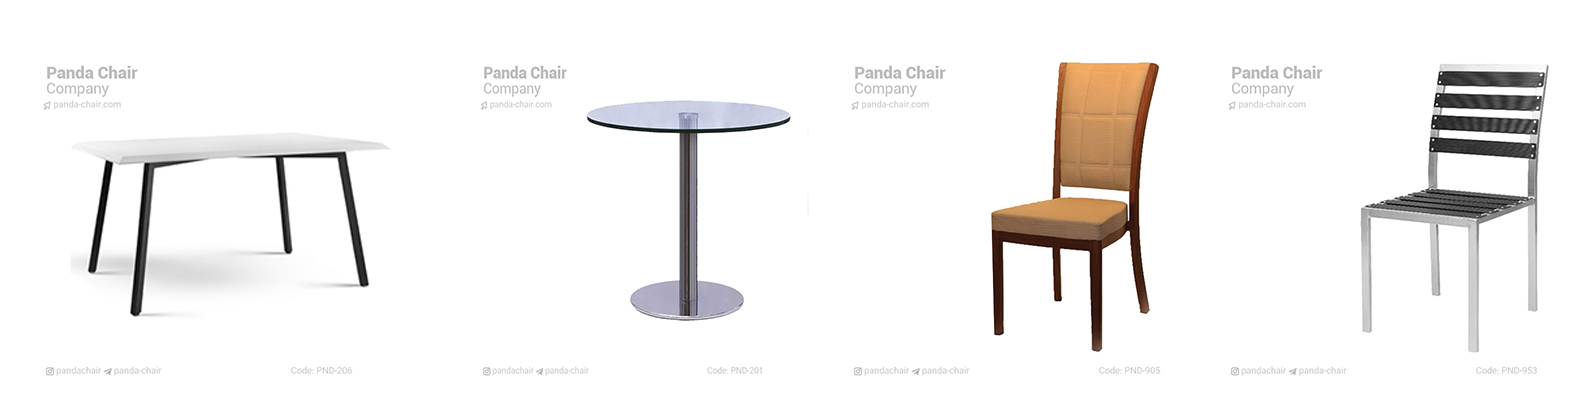 میز-صندلی-و-مبلمان-فلزی-مبلمان-پاندا-1